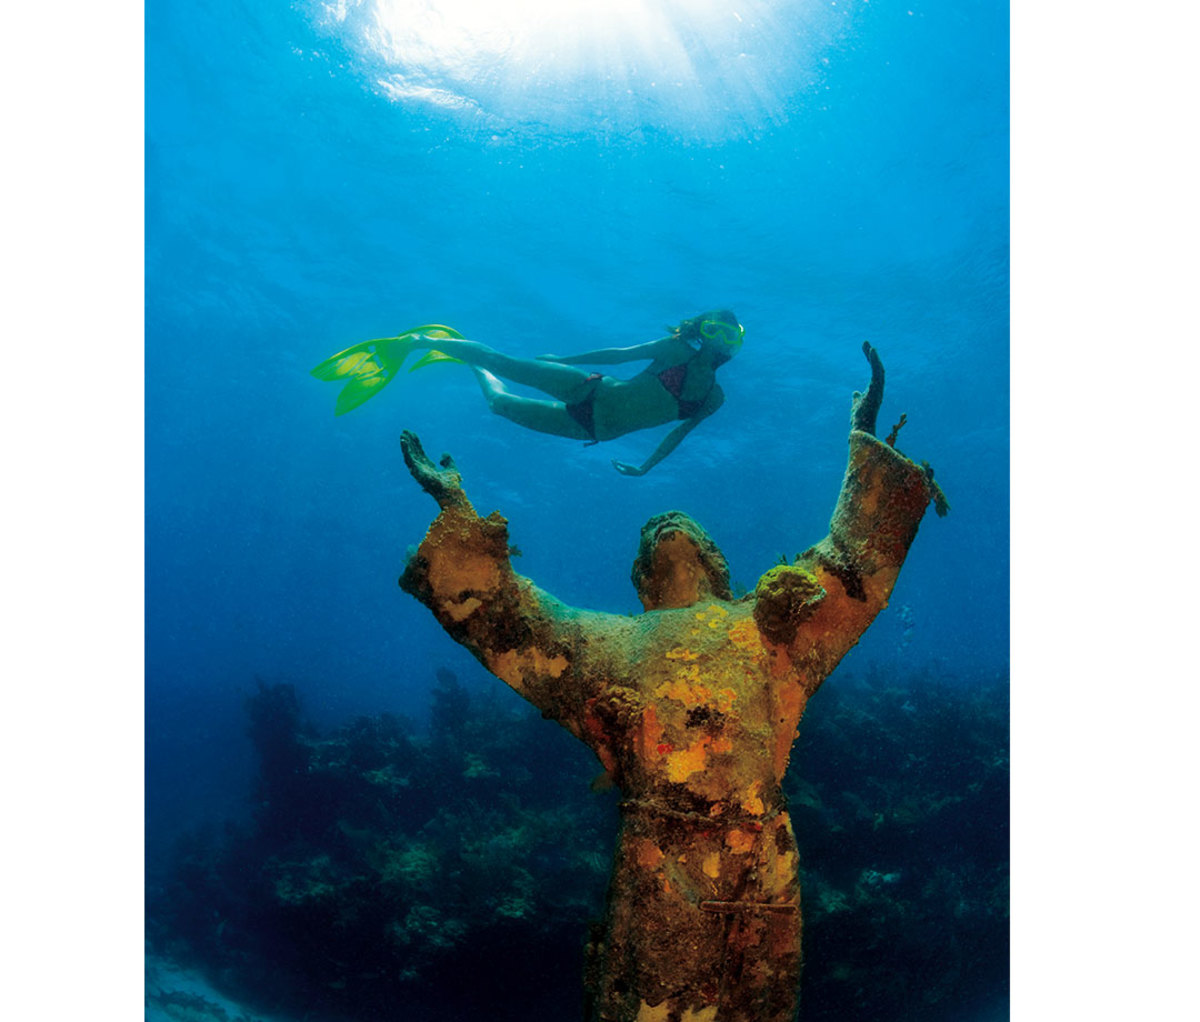 Woman scuba diving past wreckage